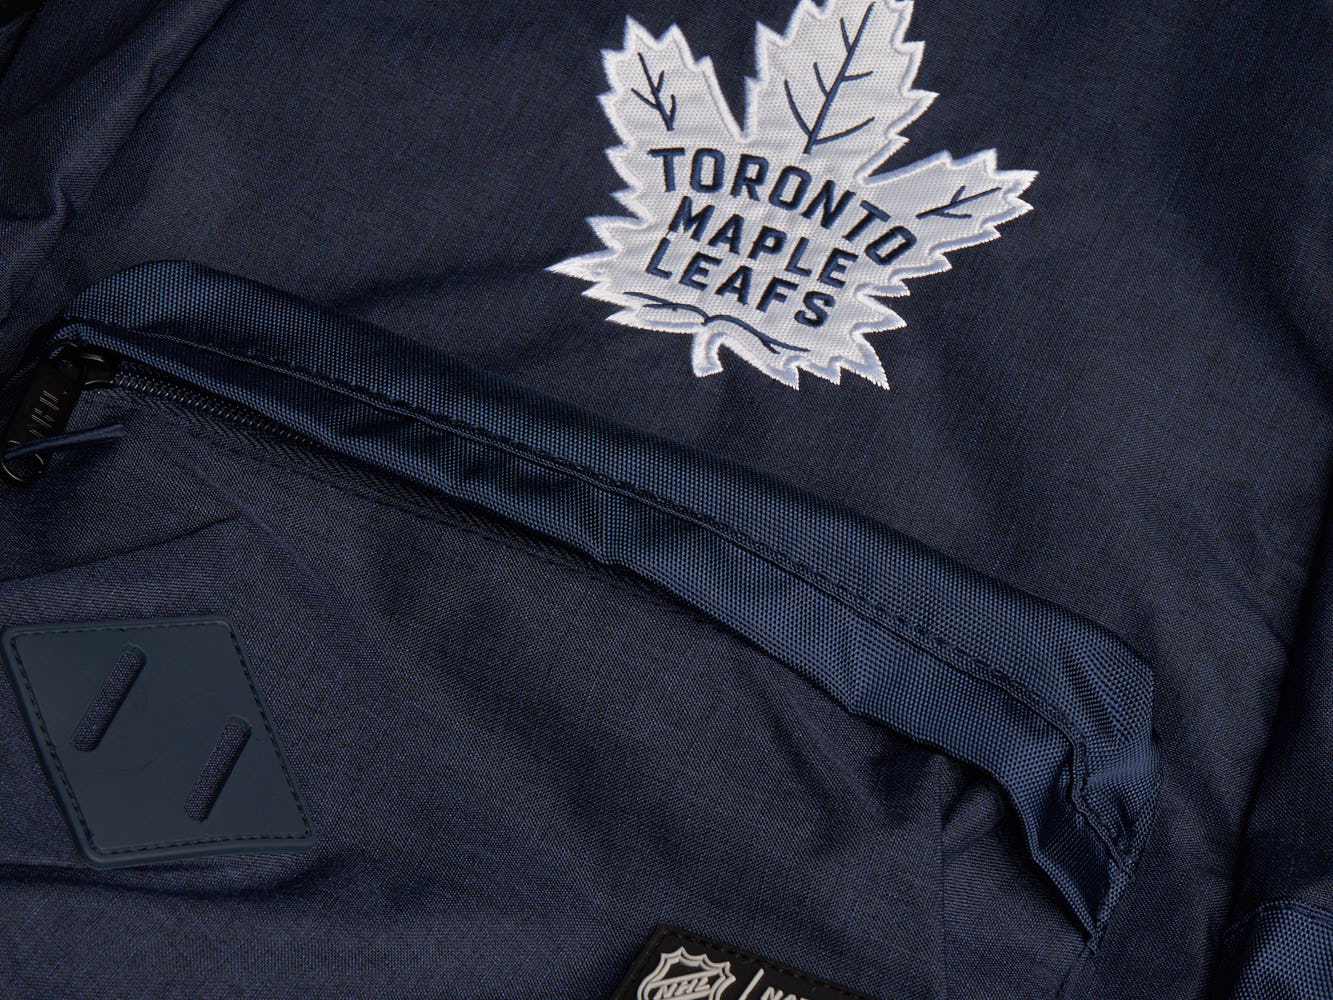 Рюкзак Toronto Maple Leafs, св.-син., арт 58207